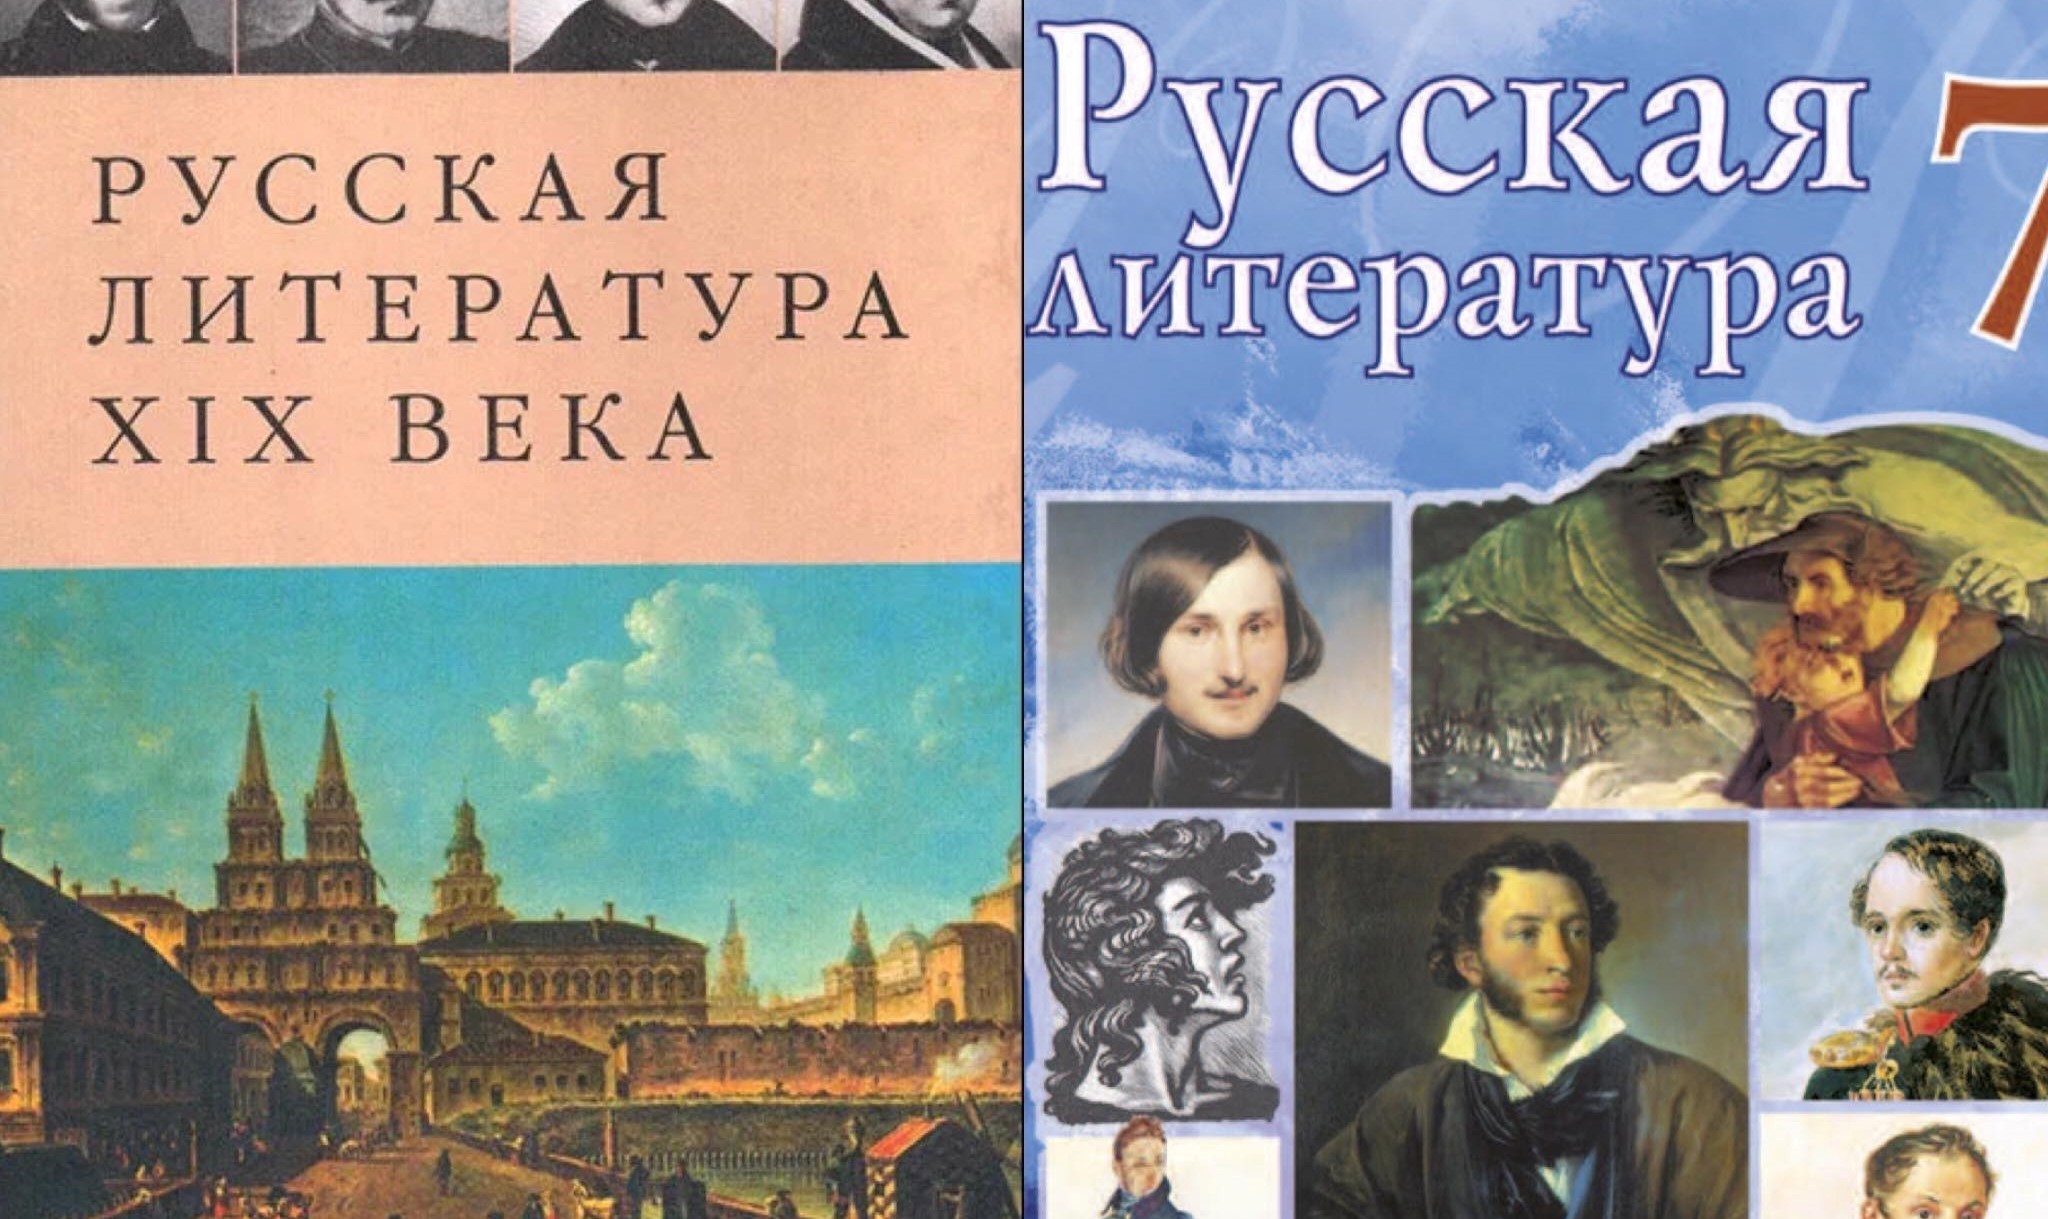 Использование художественной литературы в обучении русскому языку имеет большое значение: спрециалист